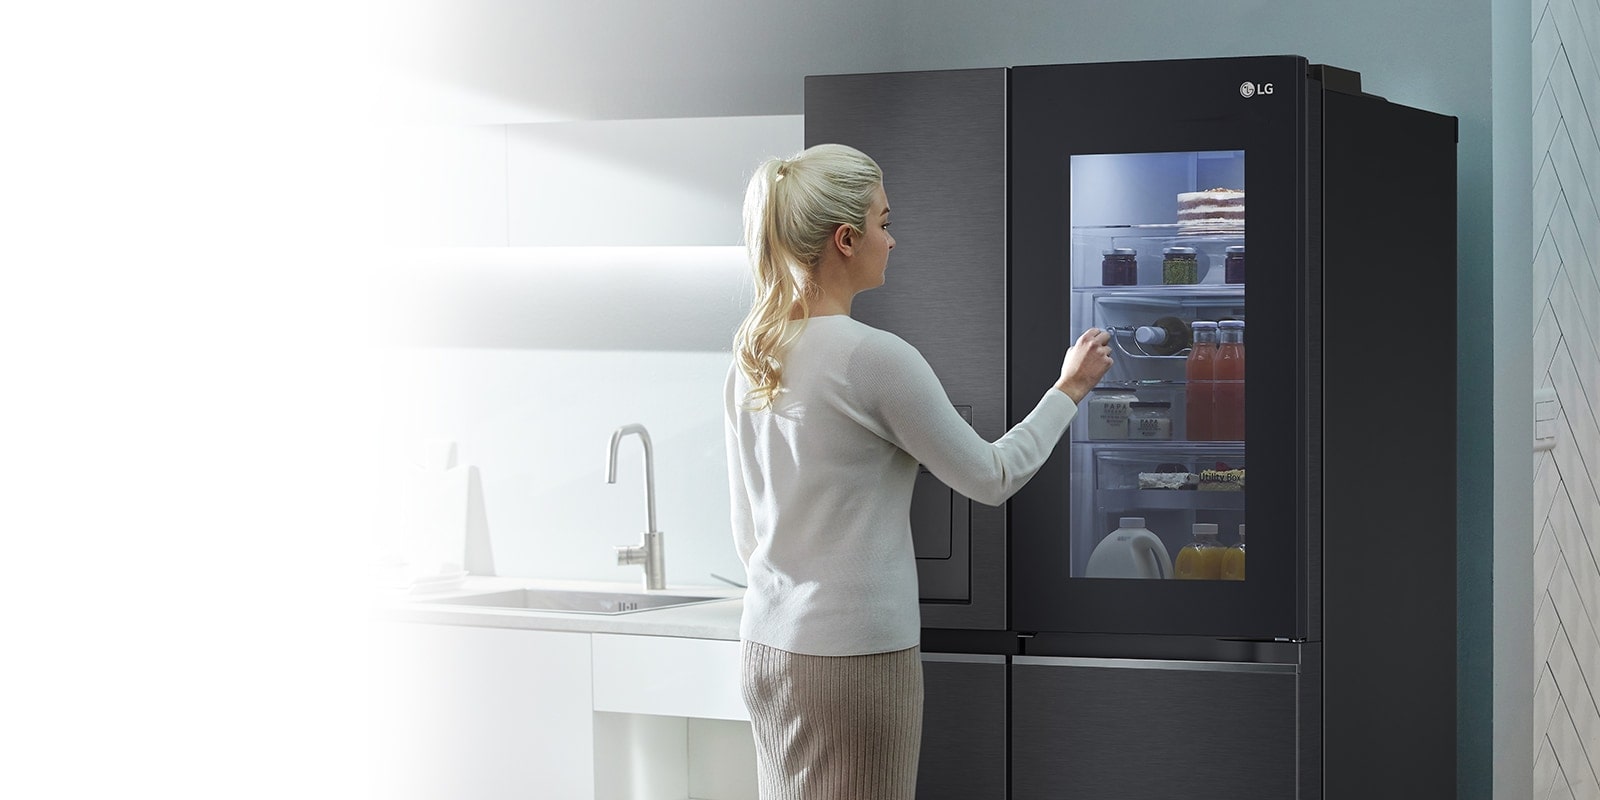 Une image montre une femme devant son réfrigérateur InstaView en train de toquer. L’intérieur du réfrigérateur s’allume et elle peut voir son contenu sans ouvrir la porte.